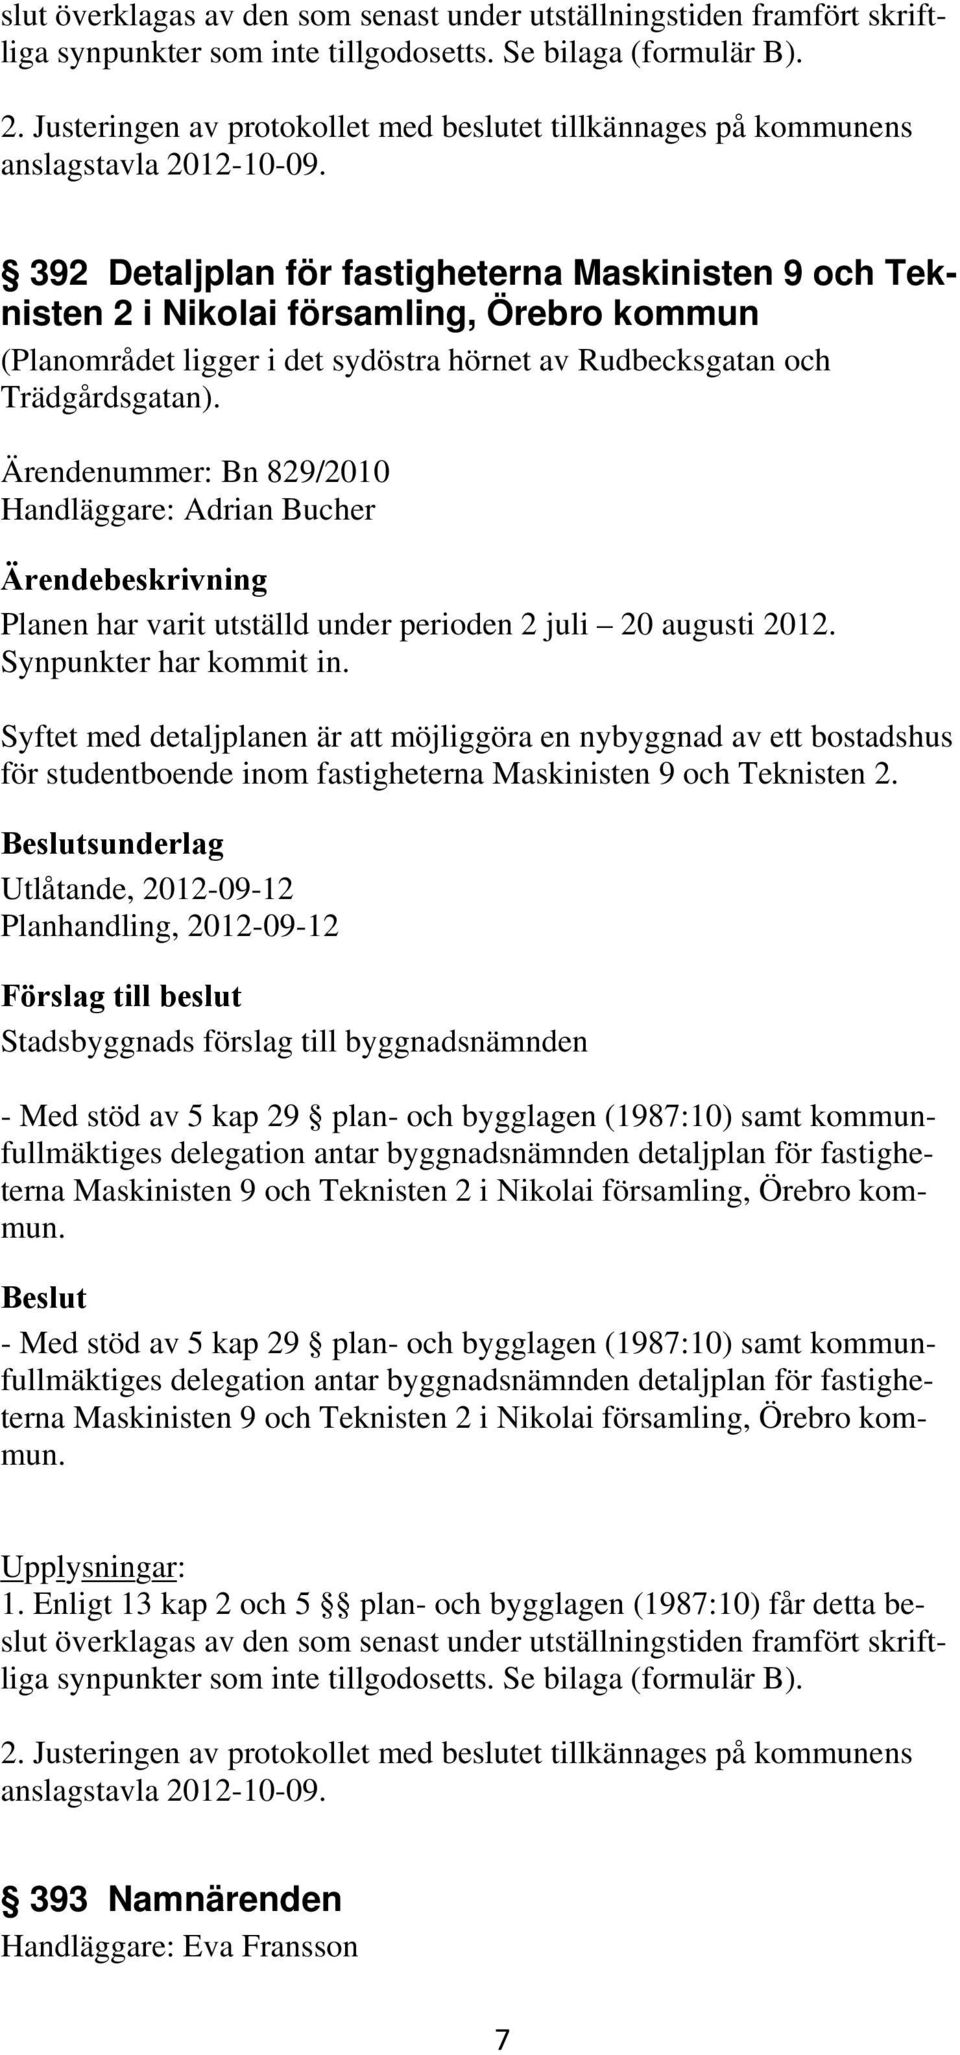 392 Detaljplan för fastigheterna Maskinisten 9 och Teknisten 2 i Nikolai församling, Örebro kommun (Planområdet ligger i det sydöstra hörnet av Rudbecksgatan och Trädgårdsgatan).